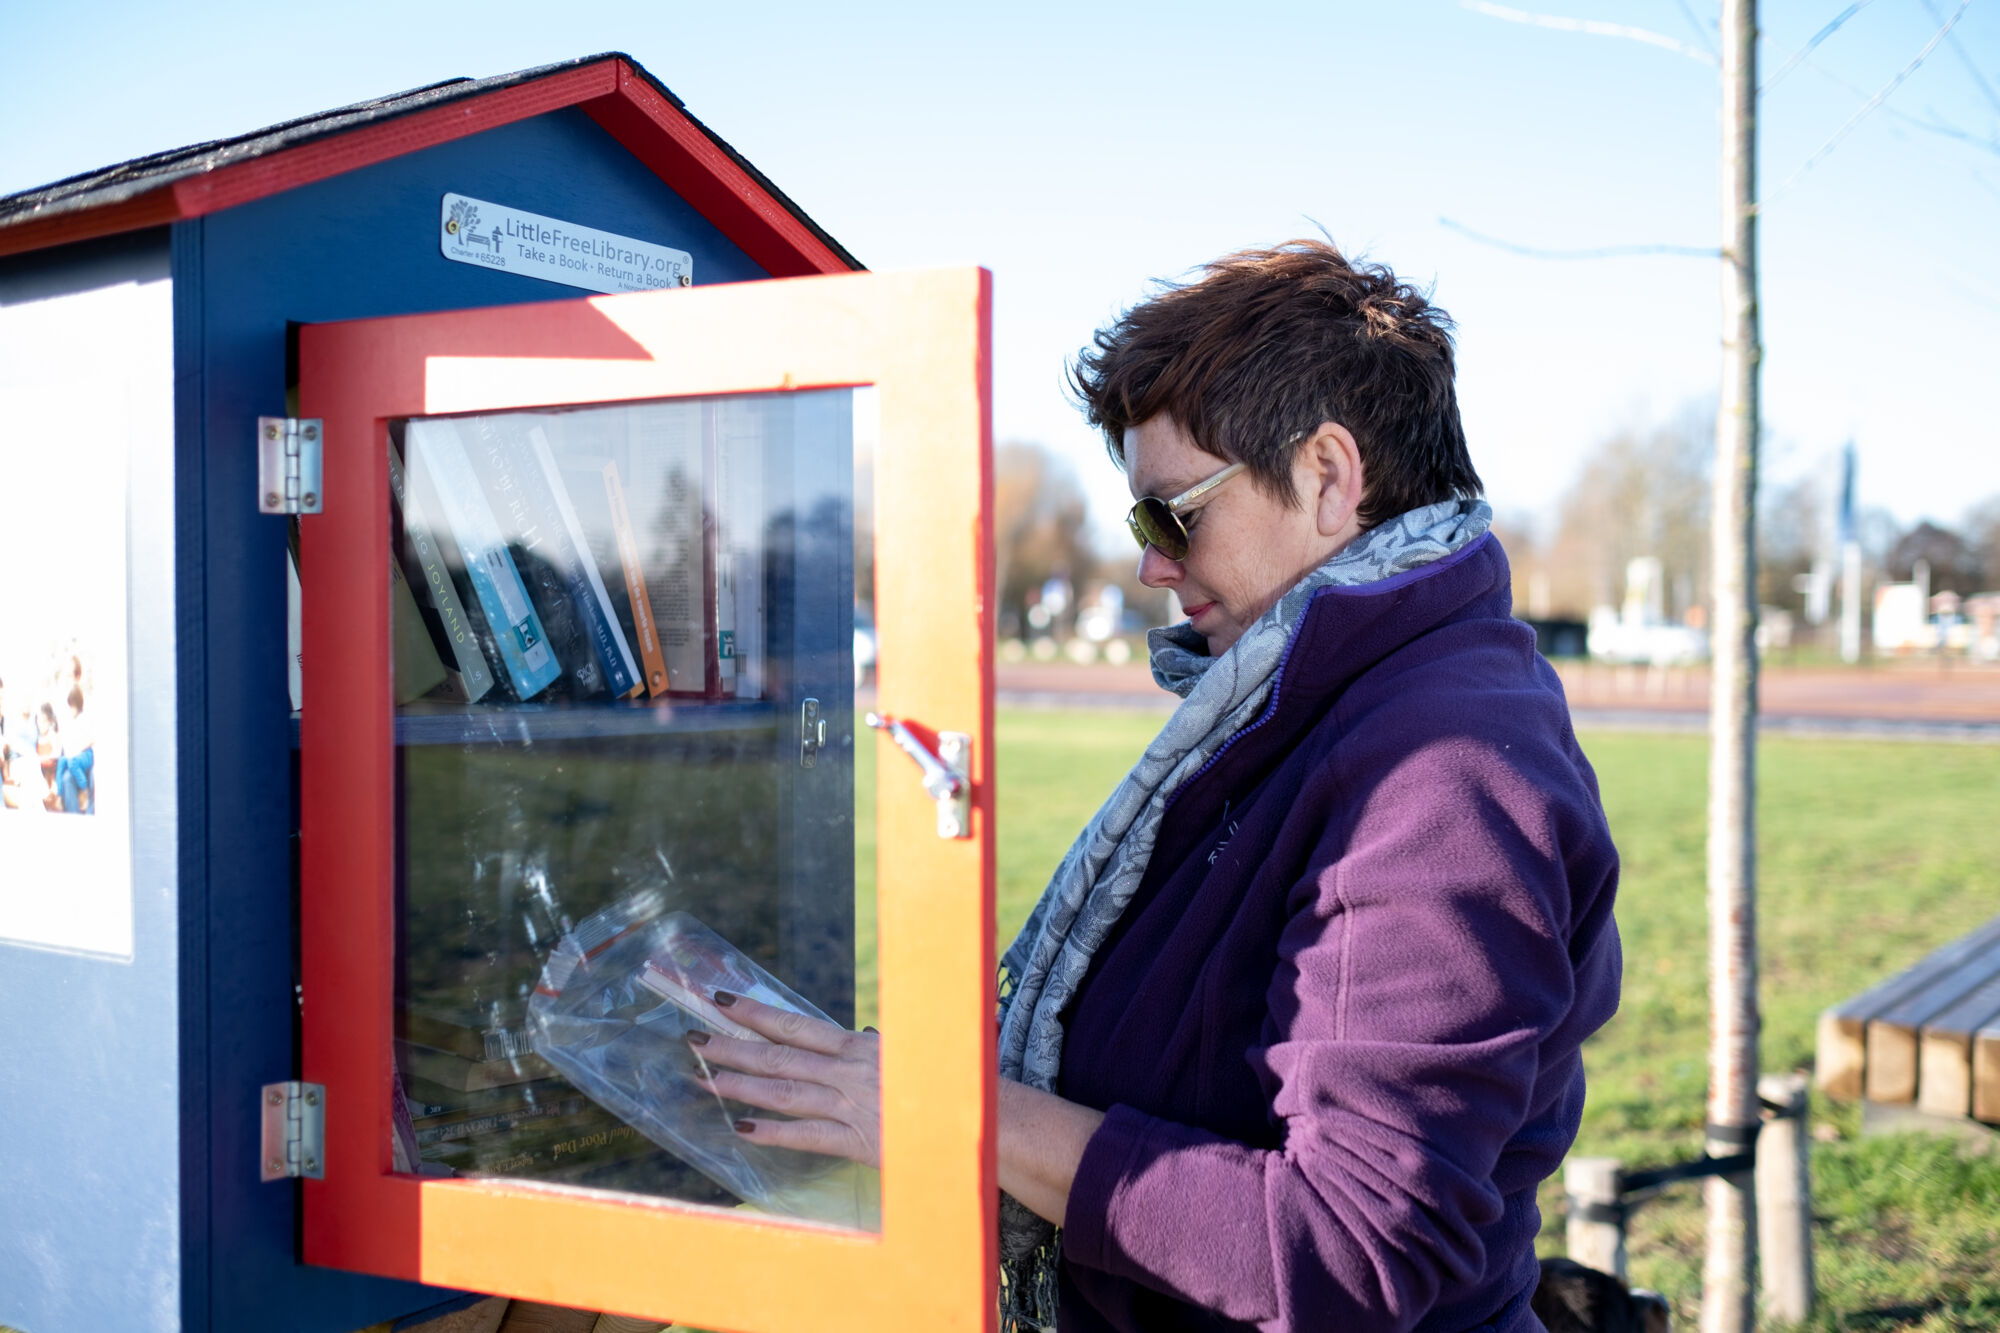 Via boekenkastjes komen de inwoners van Puurs-Sint-Amands op een laagdrempelige manier in contact met boeken.